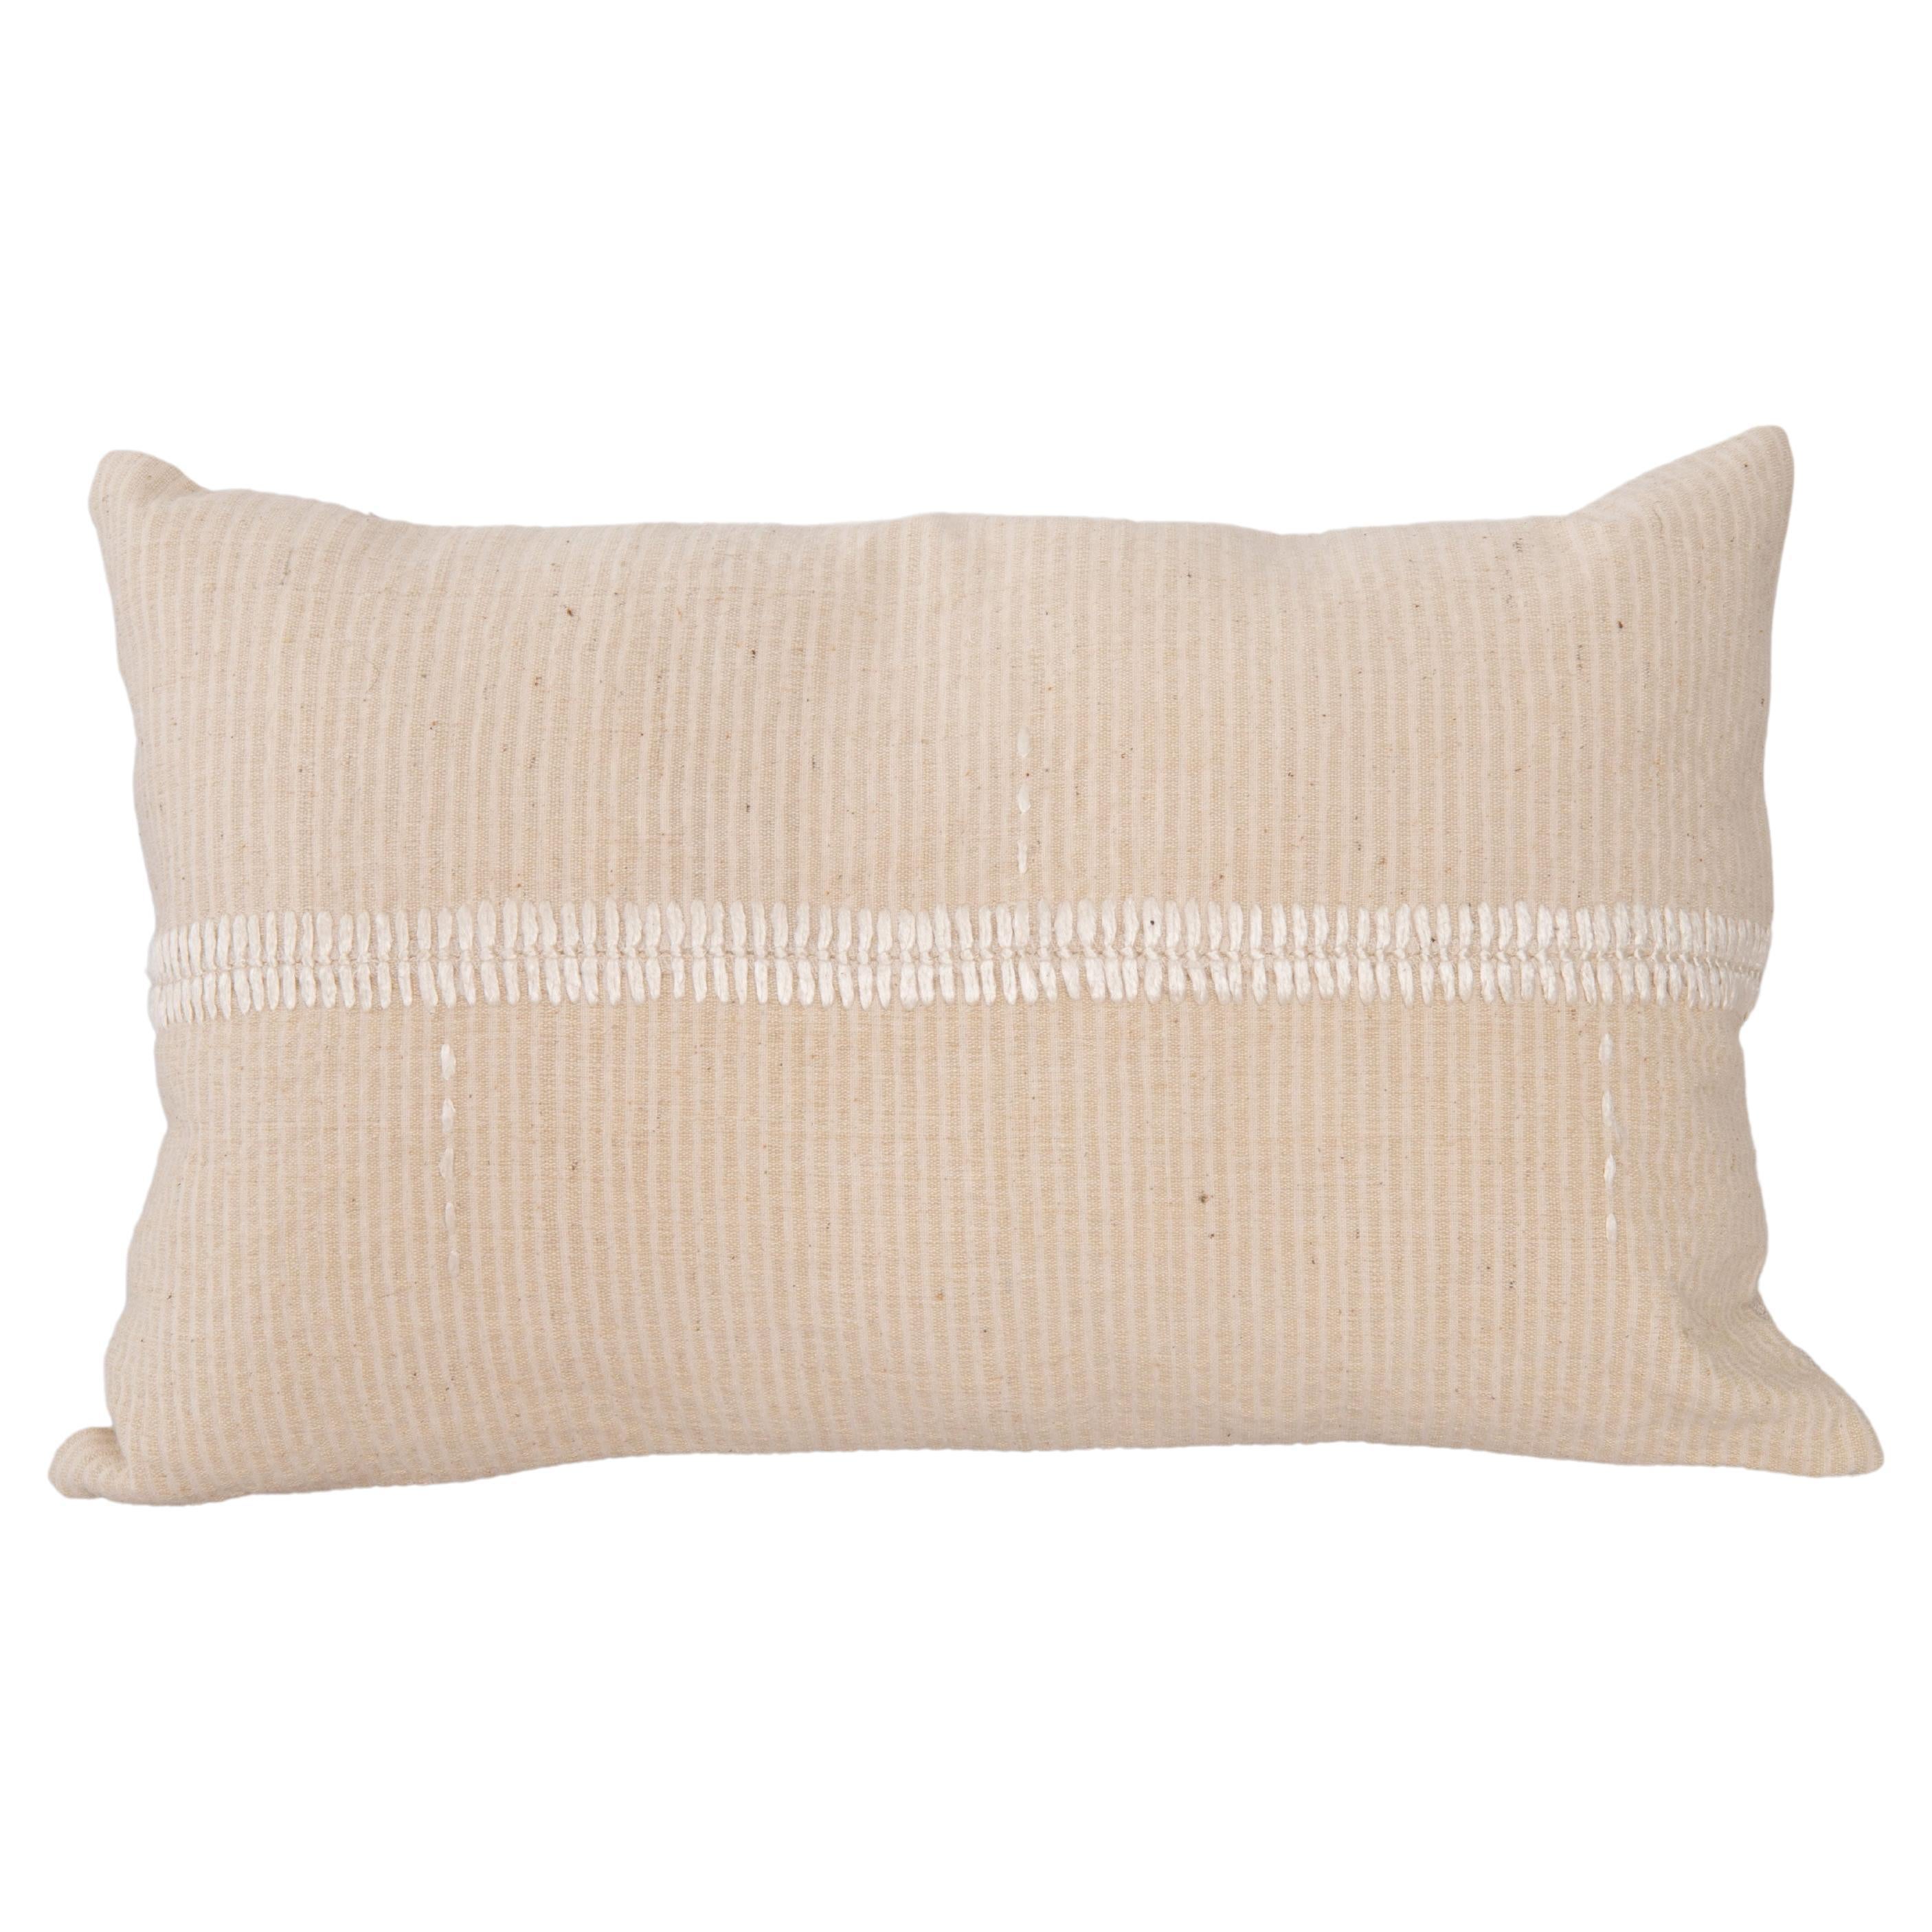 Mid 20th C. Pillow Cover Made from Vintage Anatolian Covers (housse de coussin du milieu du 20e siècle fabriquée à partir de couvertures anatoliennes d'époque)